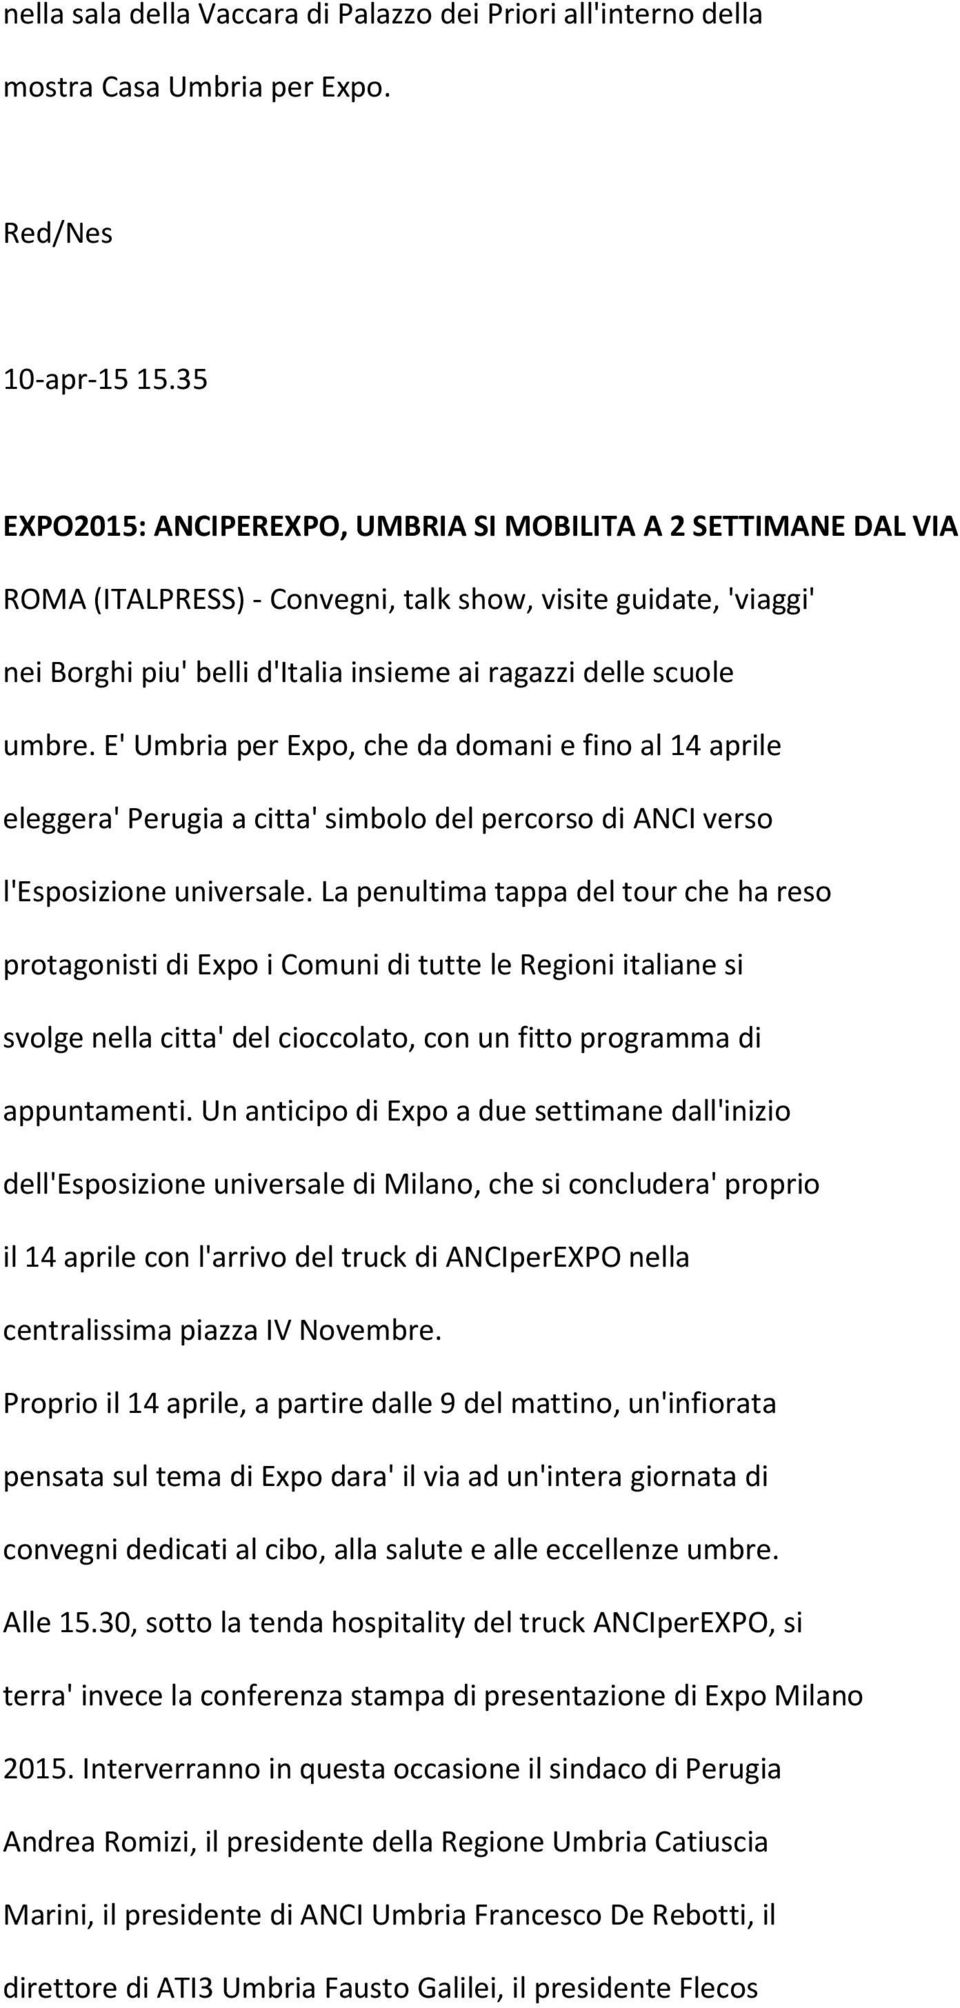 umbre. E' Umbria per Expo, che da domani e fino al 14 aprile eleggera' Perugia a citta' simbolo del percorso di ANCI verso l'esposizione universale.